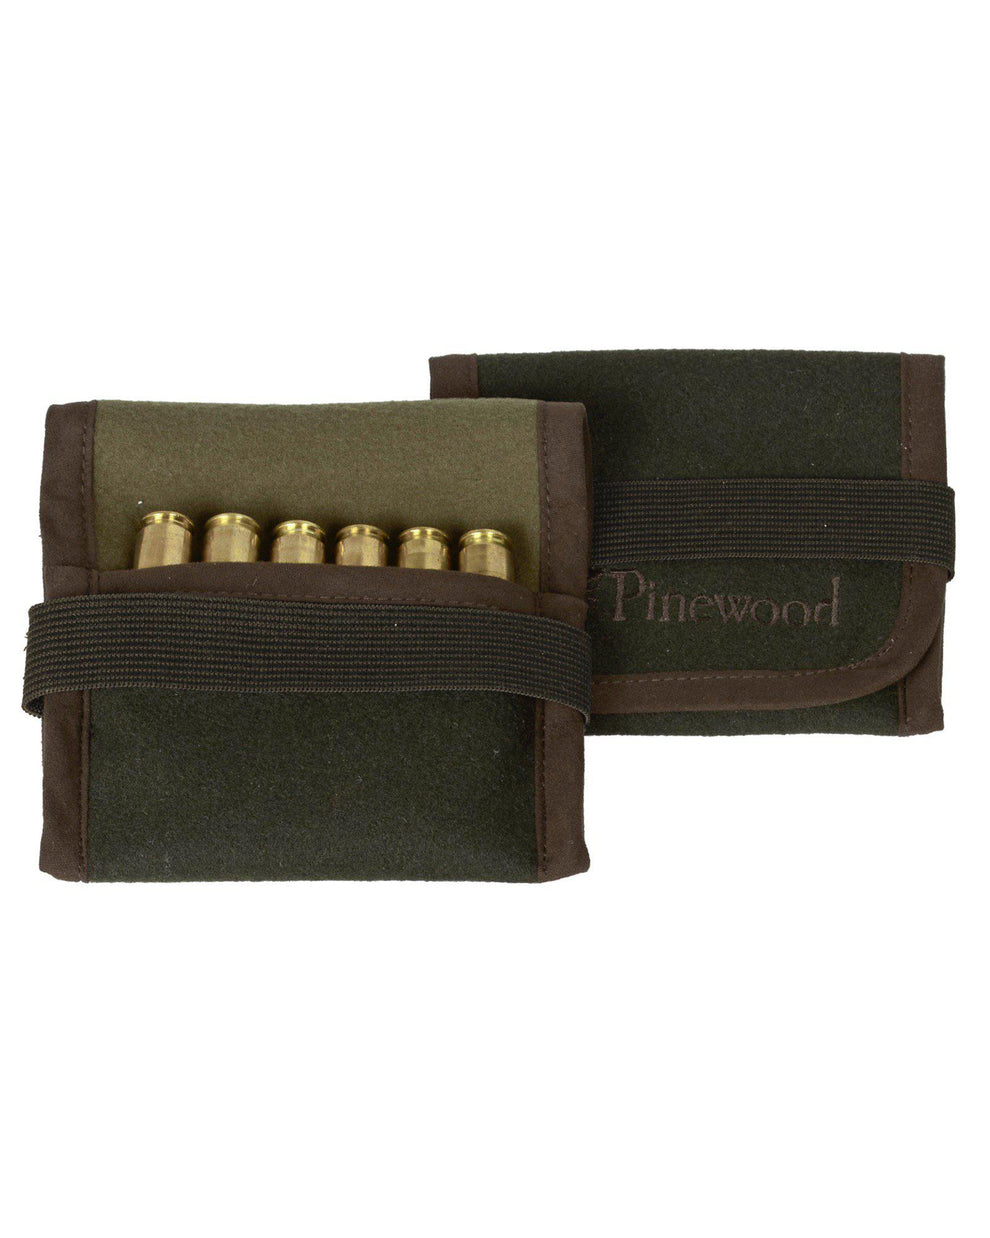 1151-135-01_Pinewood-Ammunition-Holder-Bag_MossGreen